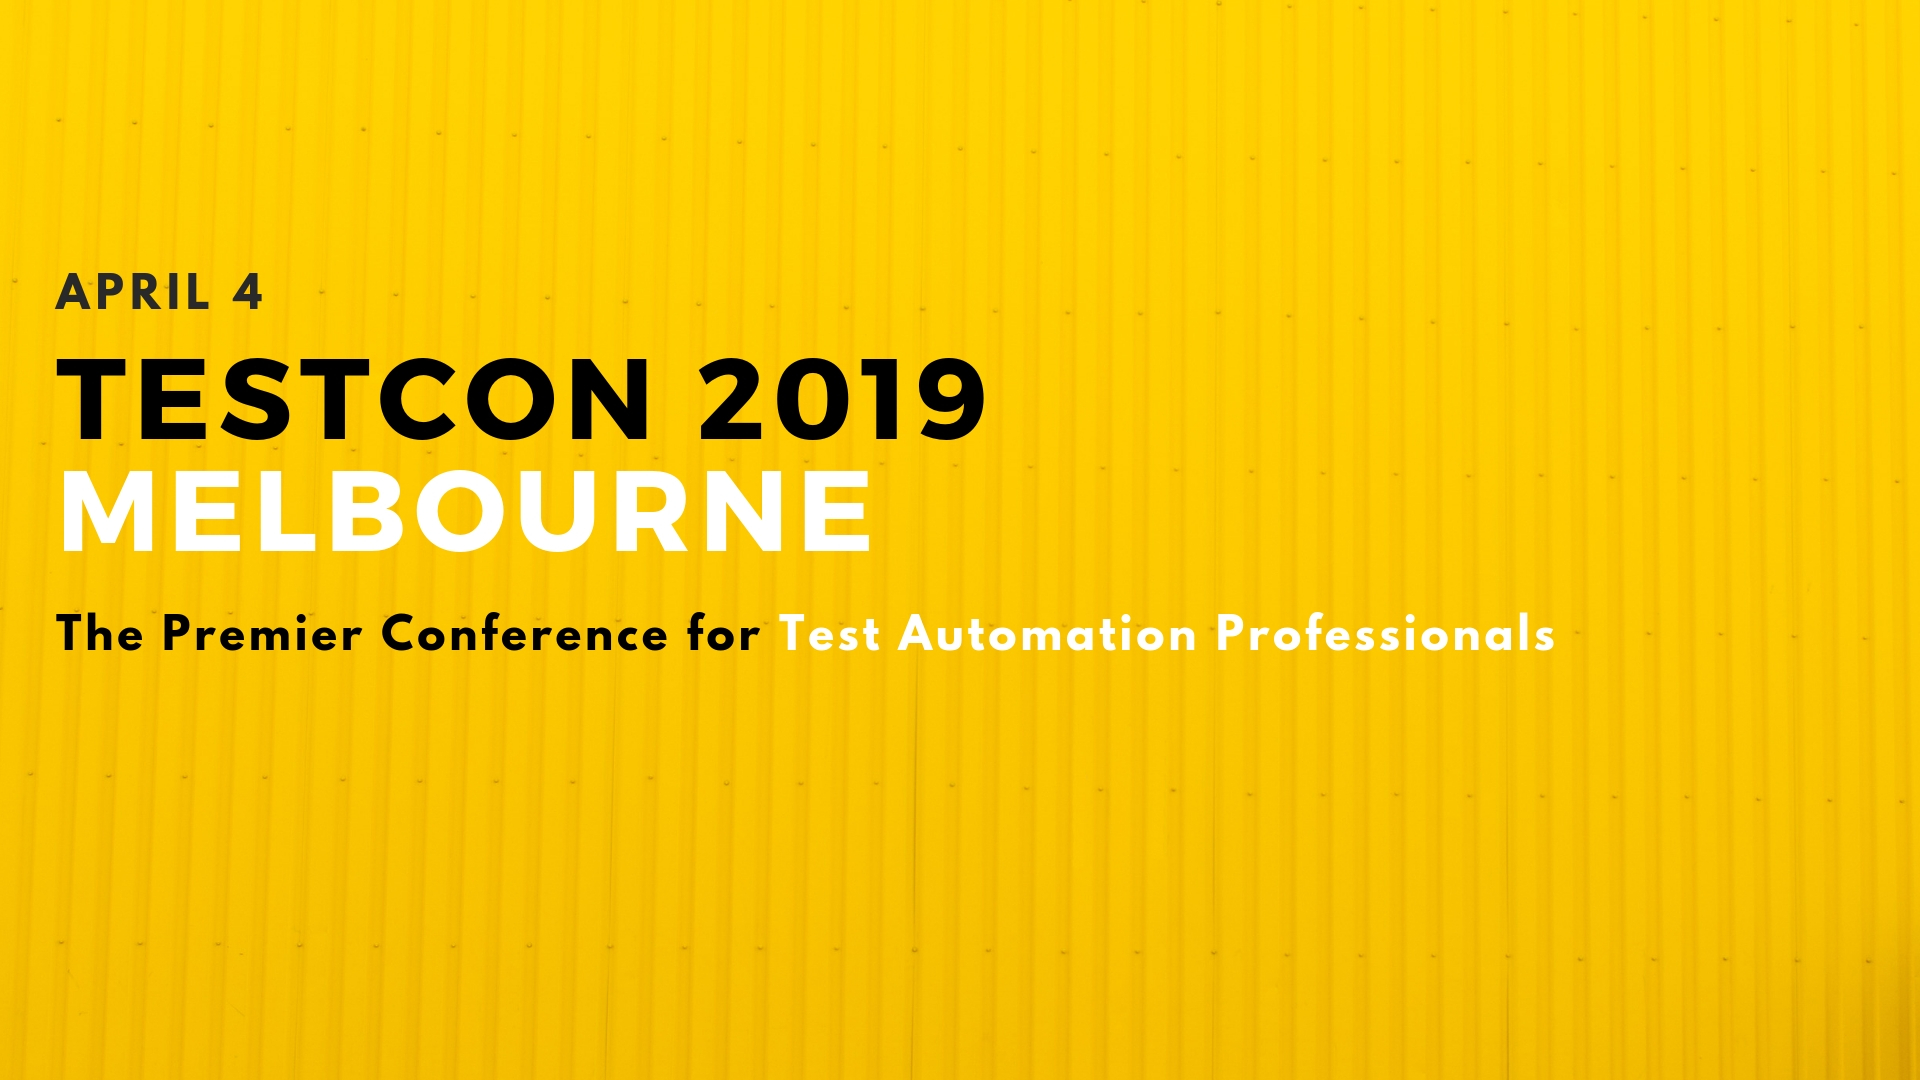 TESTCON 2019 Melbourne, Melbourne, Victoria, Australia